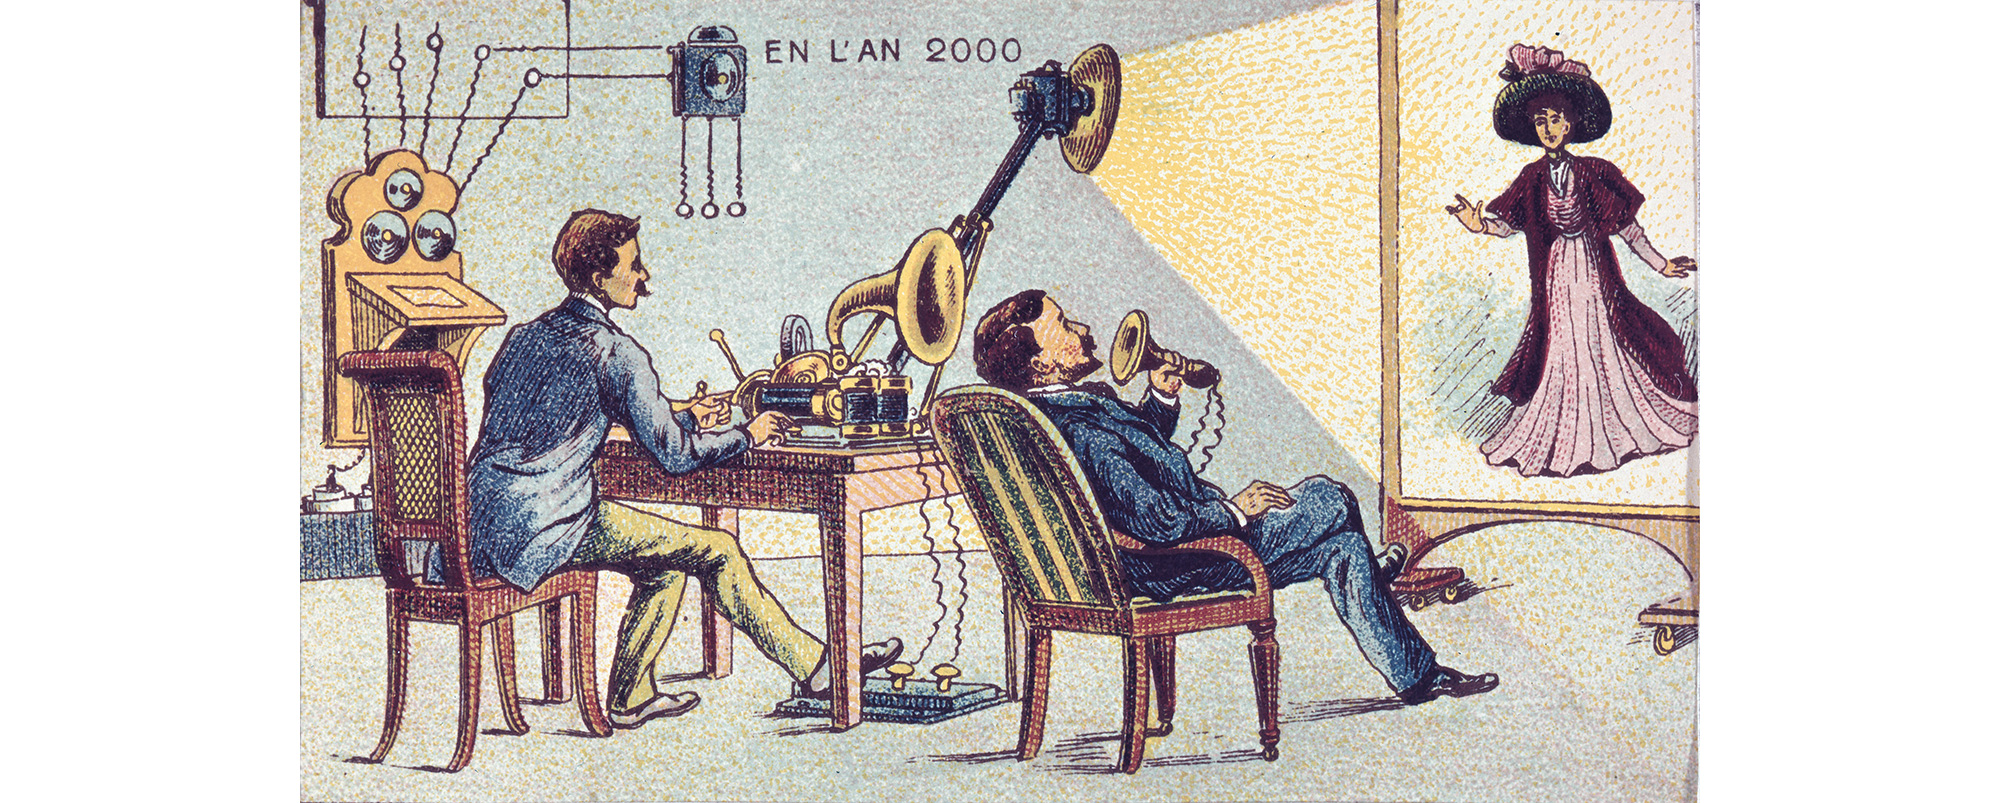 Anos 2000 imaginados por ilustrador de 1900, na França